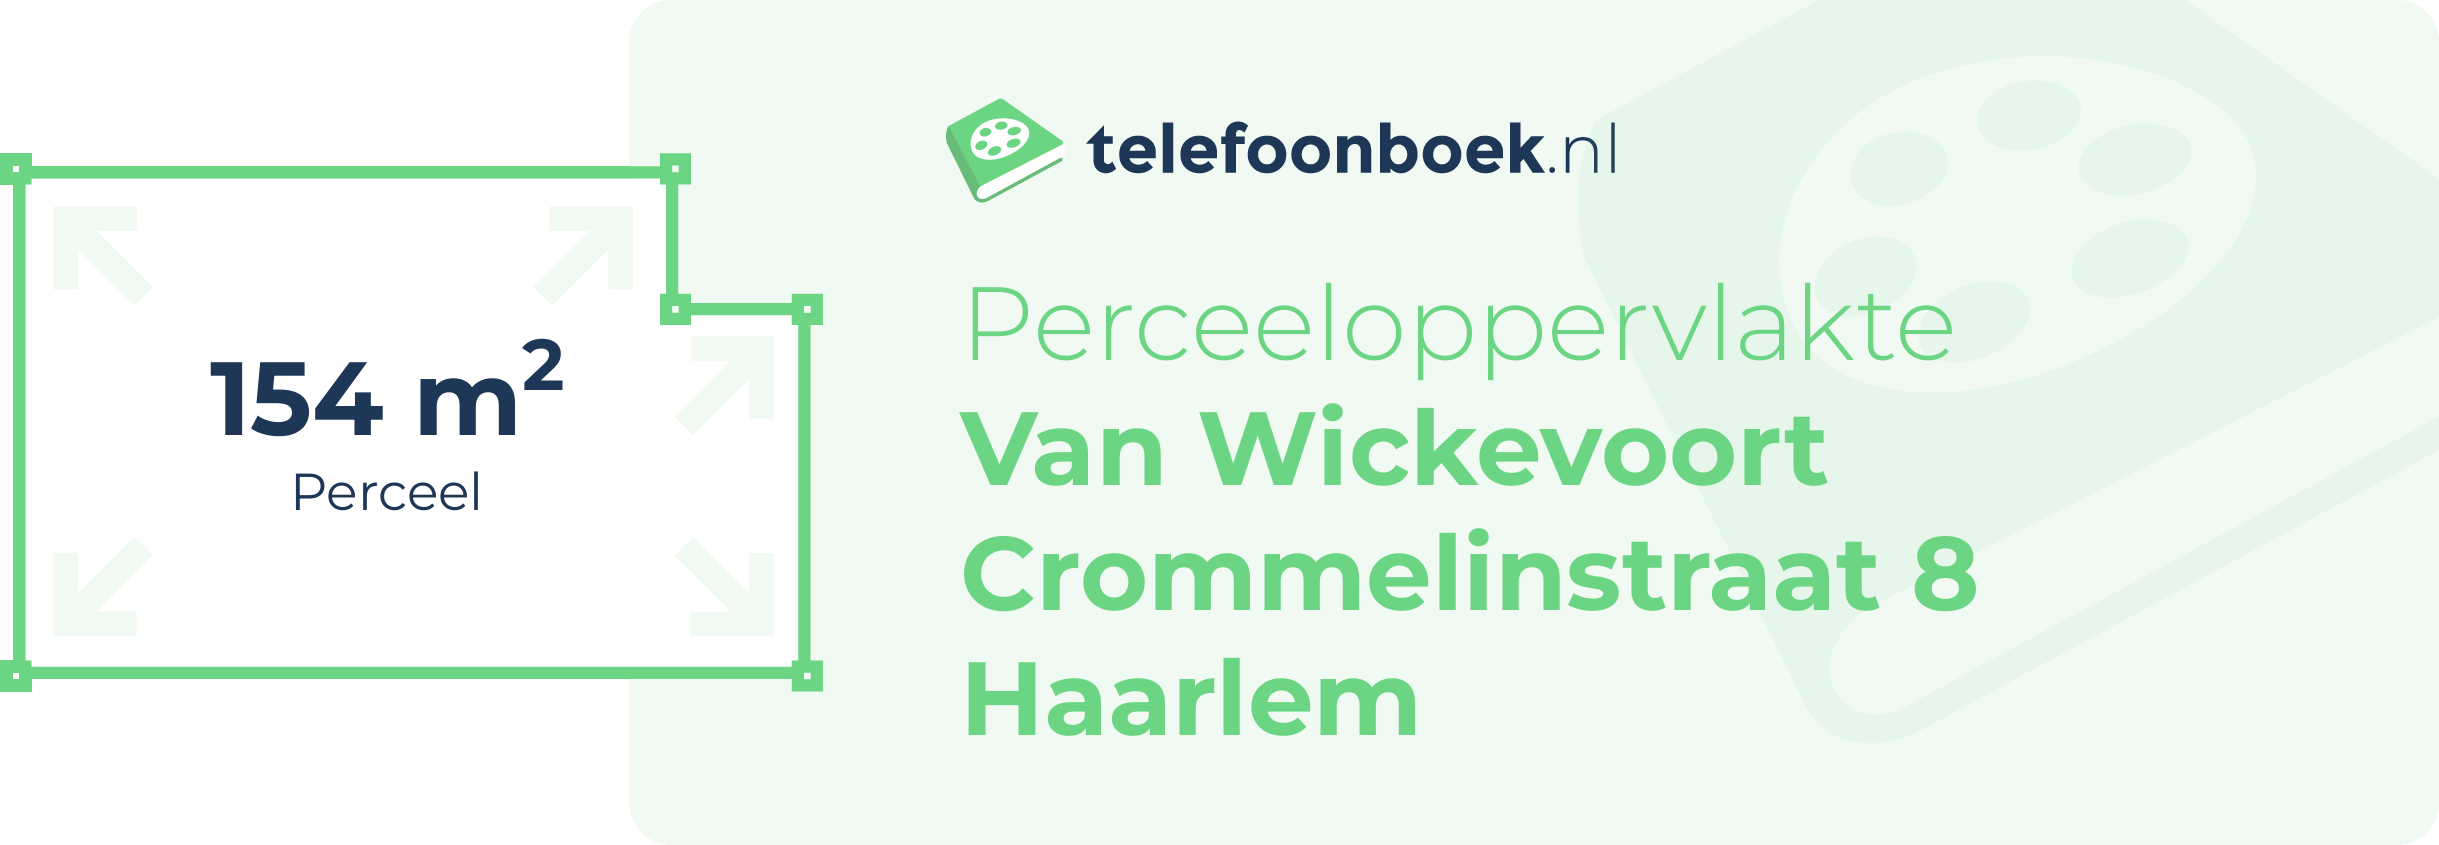 Perceeloppervlakte Van Wickevoort Crommelinstraat 8 Haarlem